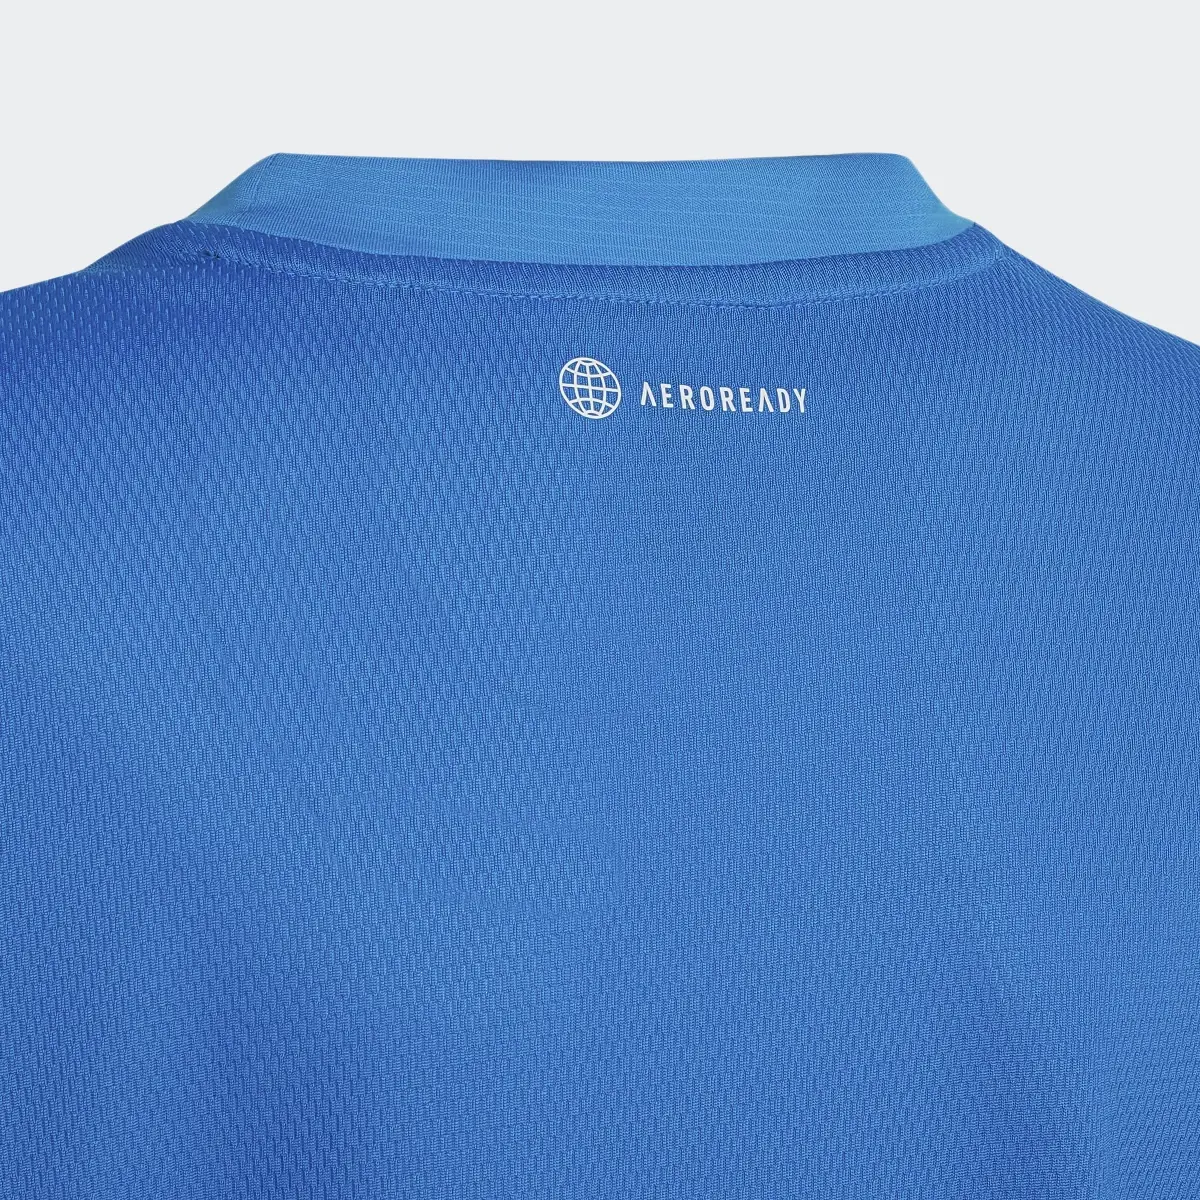 Adidas T-shirt da allenamento Designed for Sport AEROREADY. 3